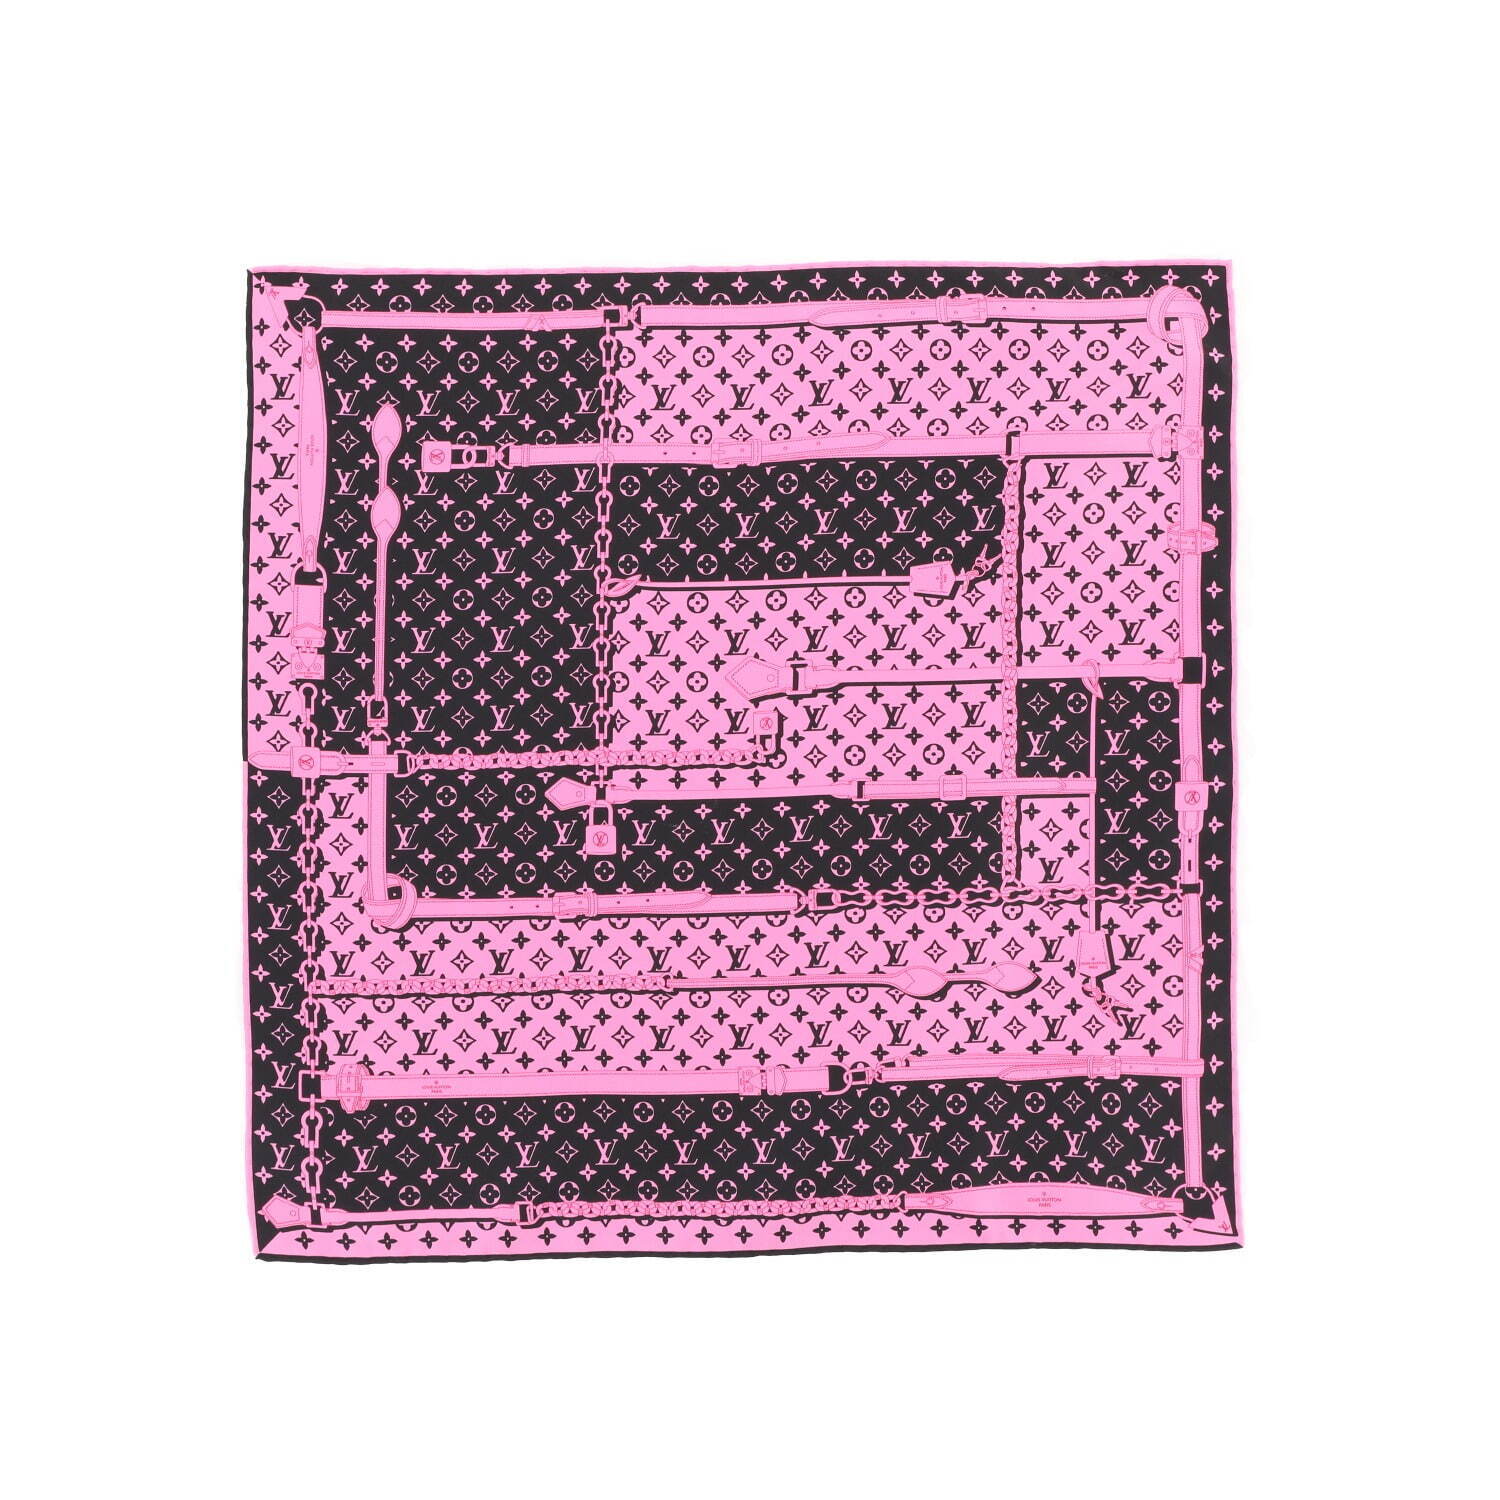 ルイ・ヴィトンの新作シルクスカーフ、モノグラム・パターン×ネオン